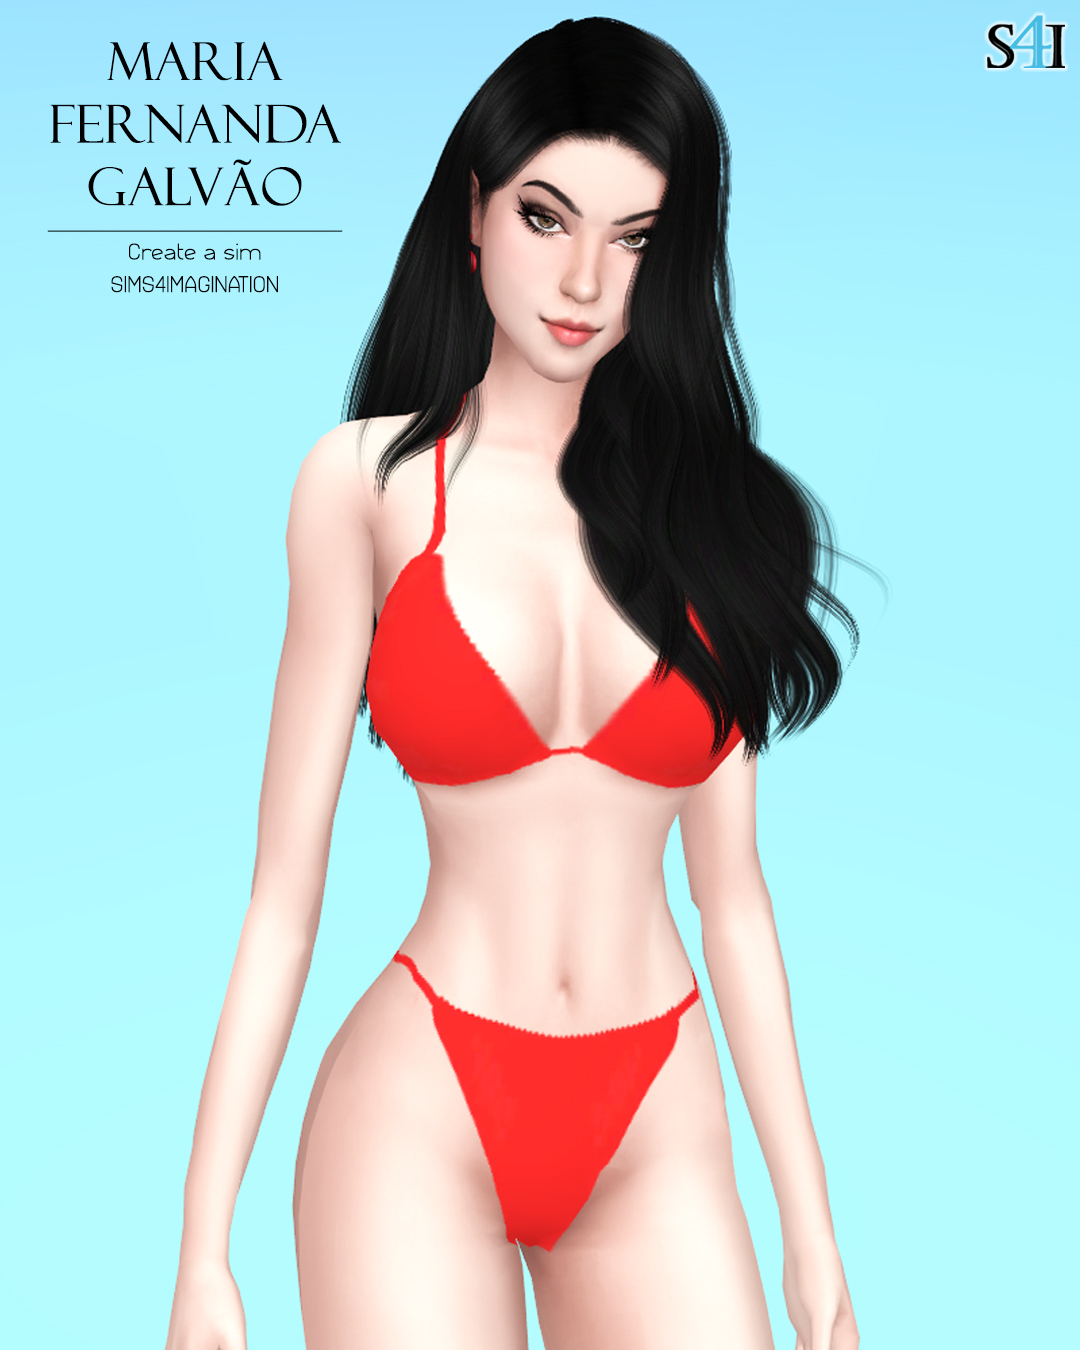 Sims 4 CAS: Maria Fernanda Galvão.